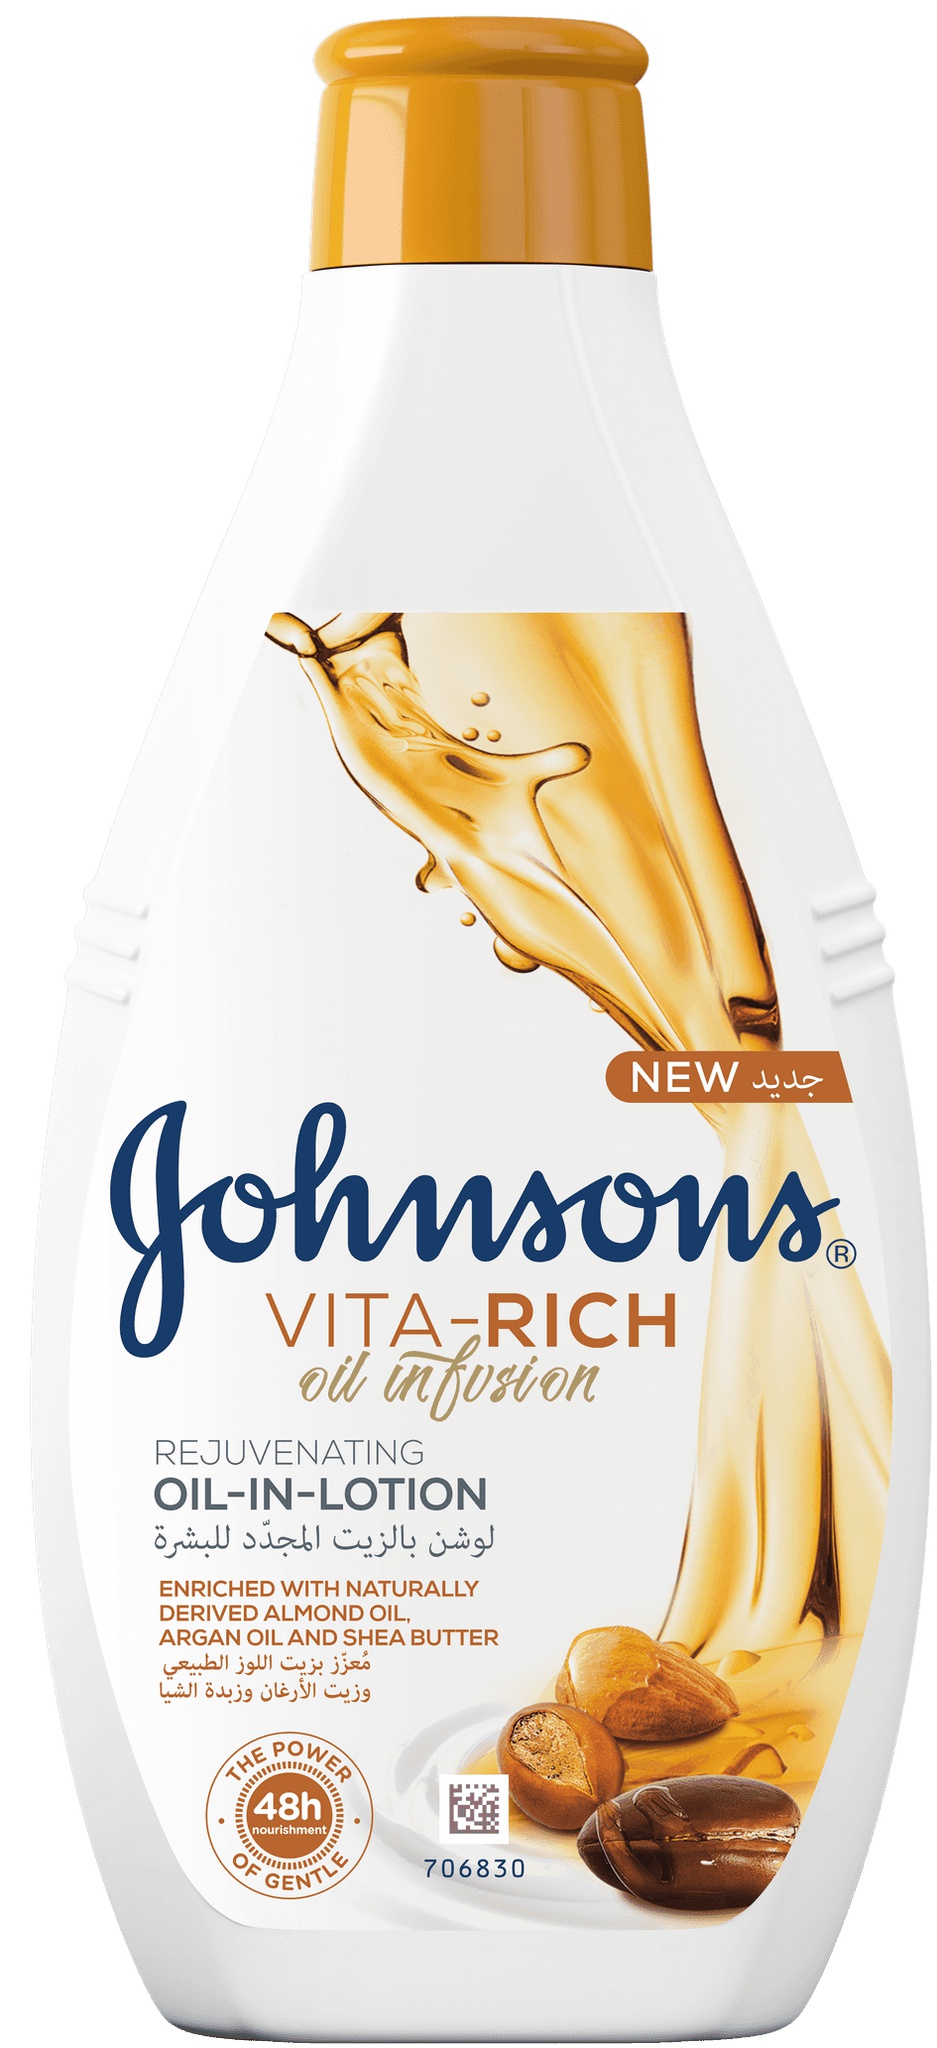 Johnson's Vita-rich Rejuvenating Oil-in-lotion